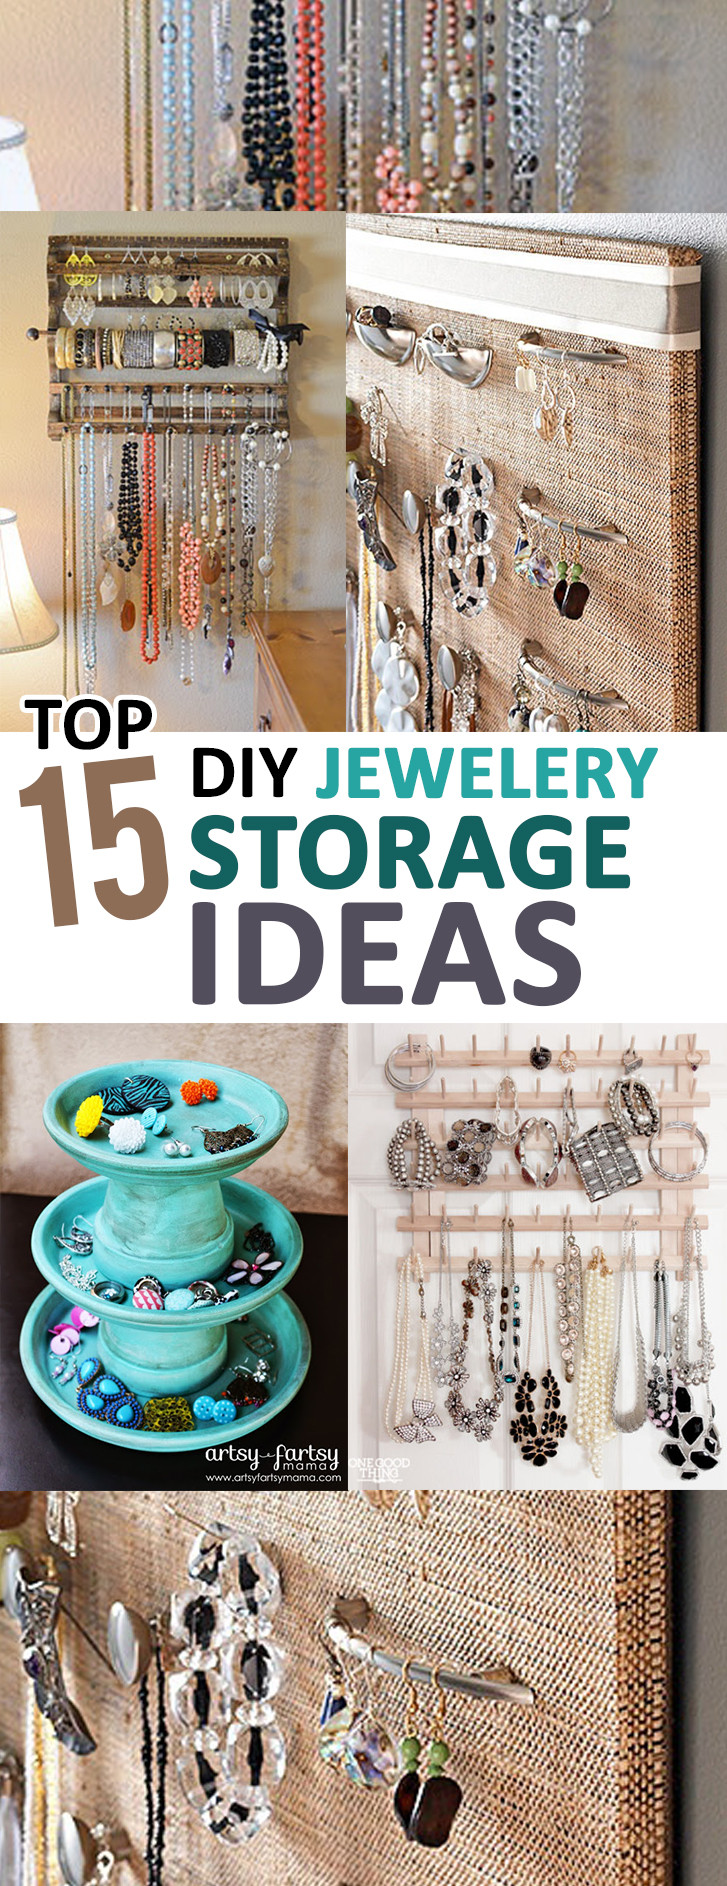 DIY Organizer Ideas
 Top 15 DIY Jewelry Storage Ideas